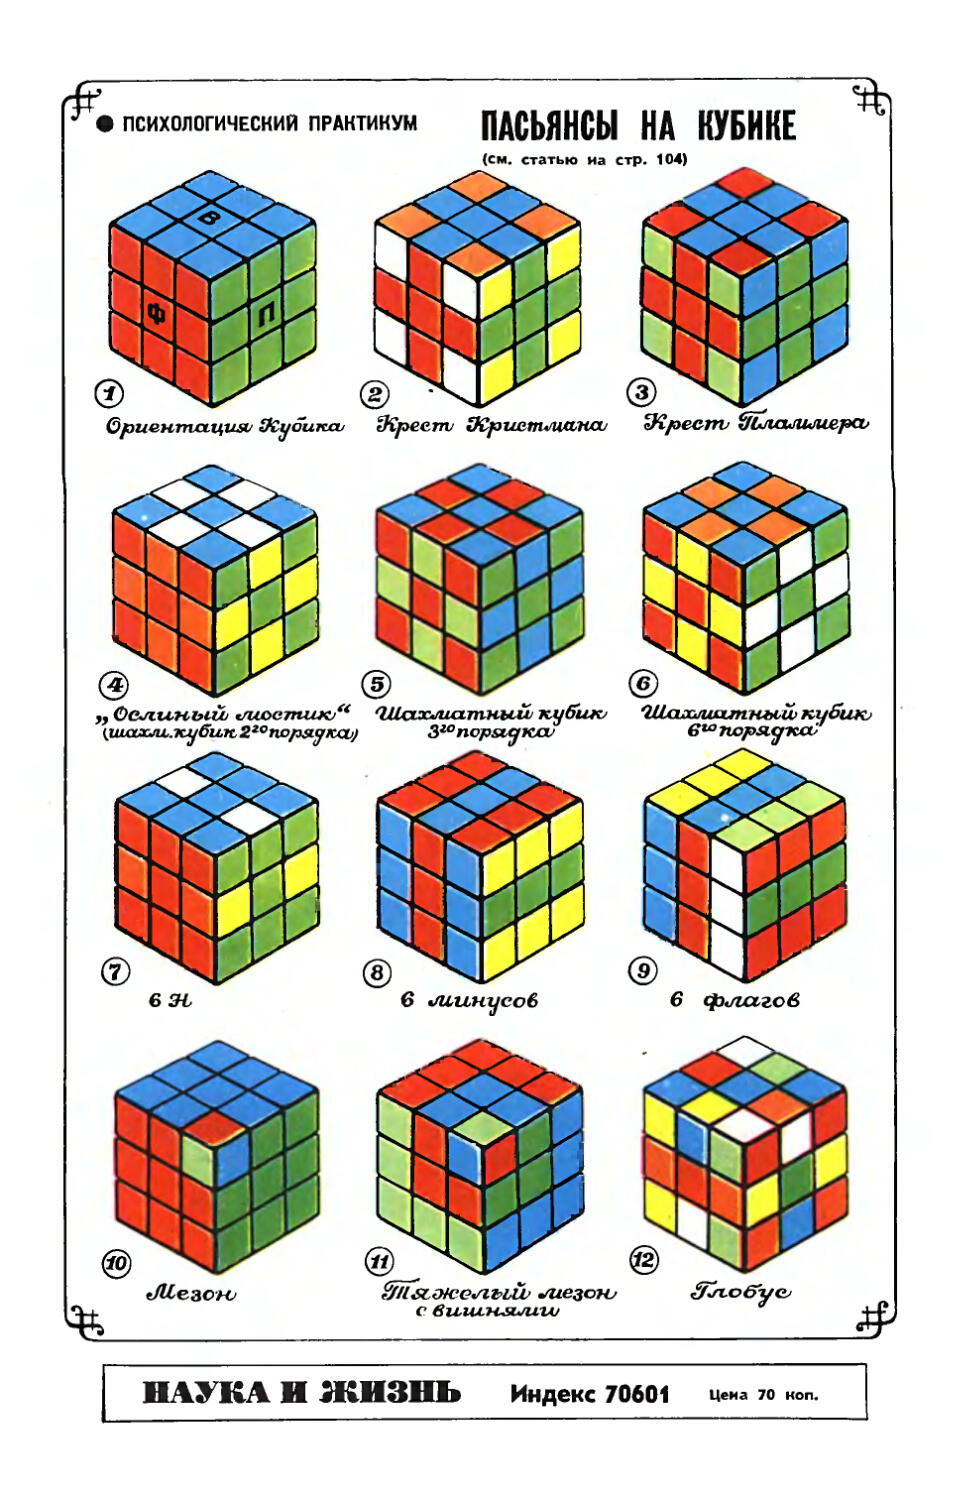 [Психологический практикум] — Рис. Ю. Чеснокова — Пасьянсы на кубике.
[Обложка] — Рис. Ю. Чеснокова — Пасьянсы на кубике.